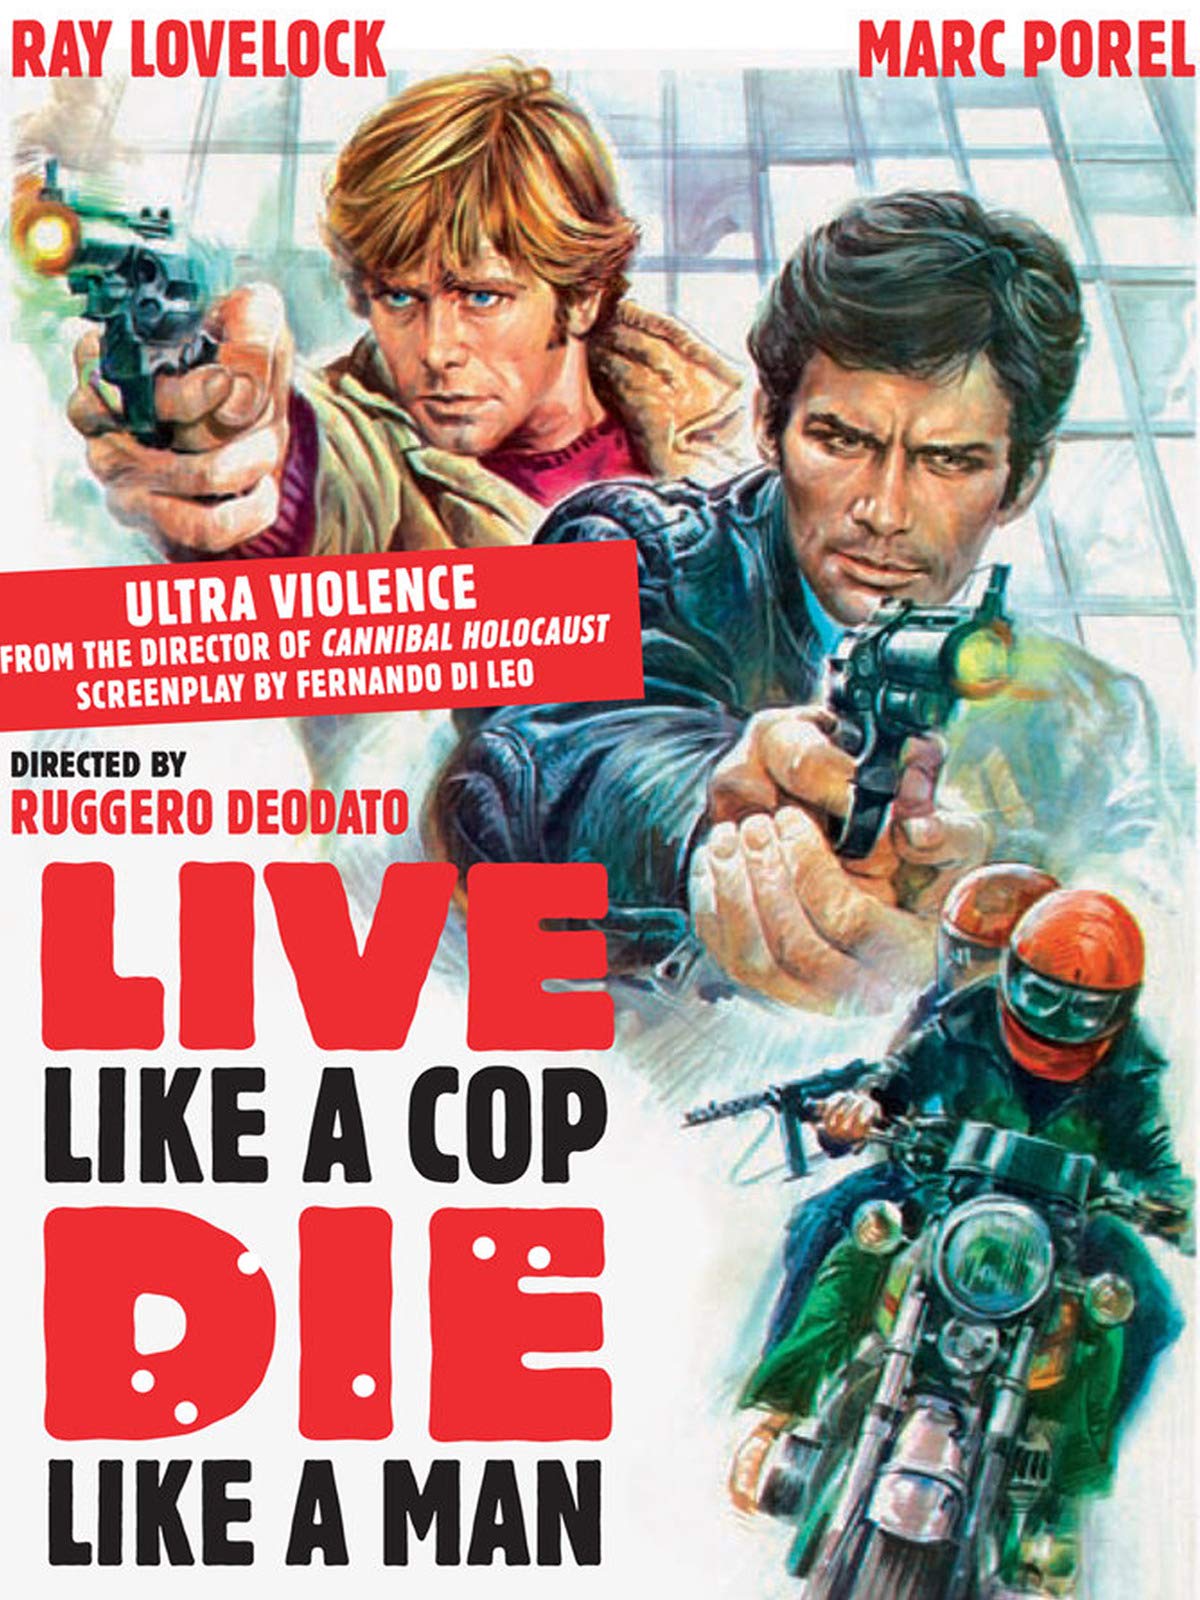 Live Like a Cop, Die Like a Man (1976) Screenshot 1 